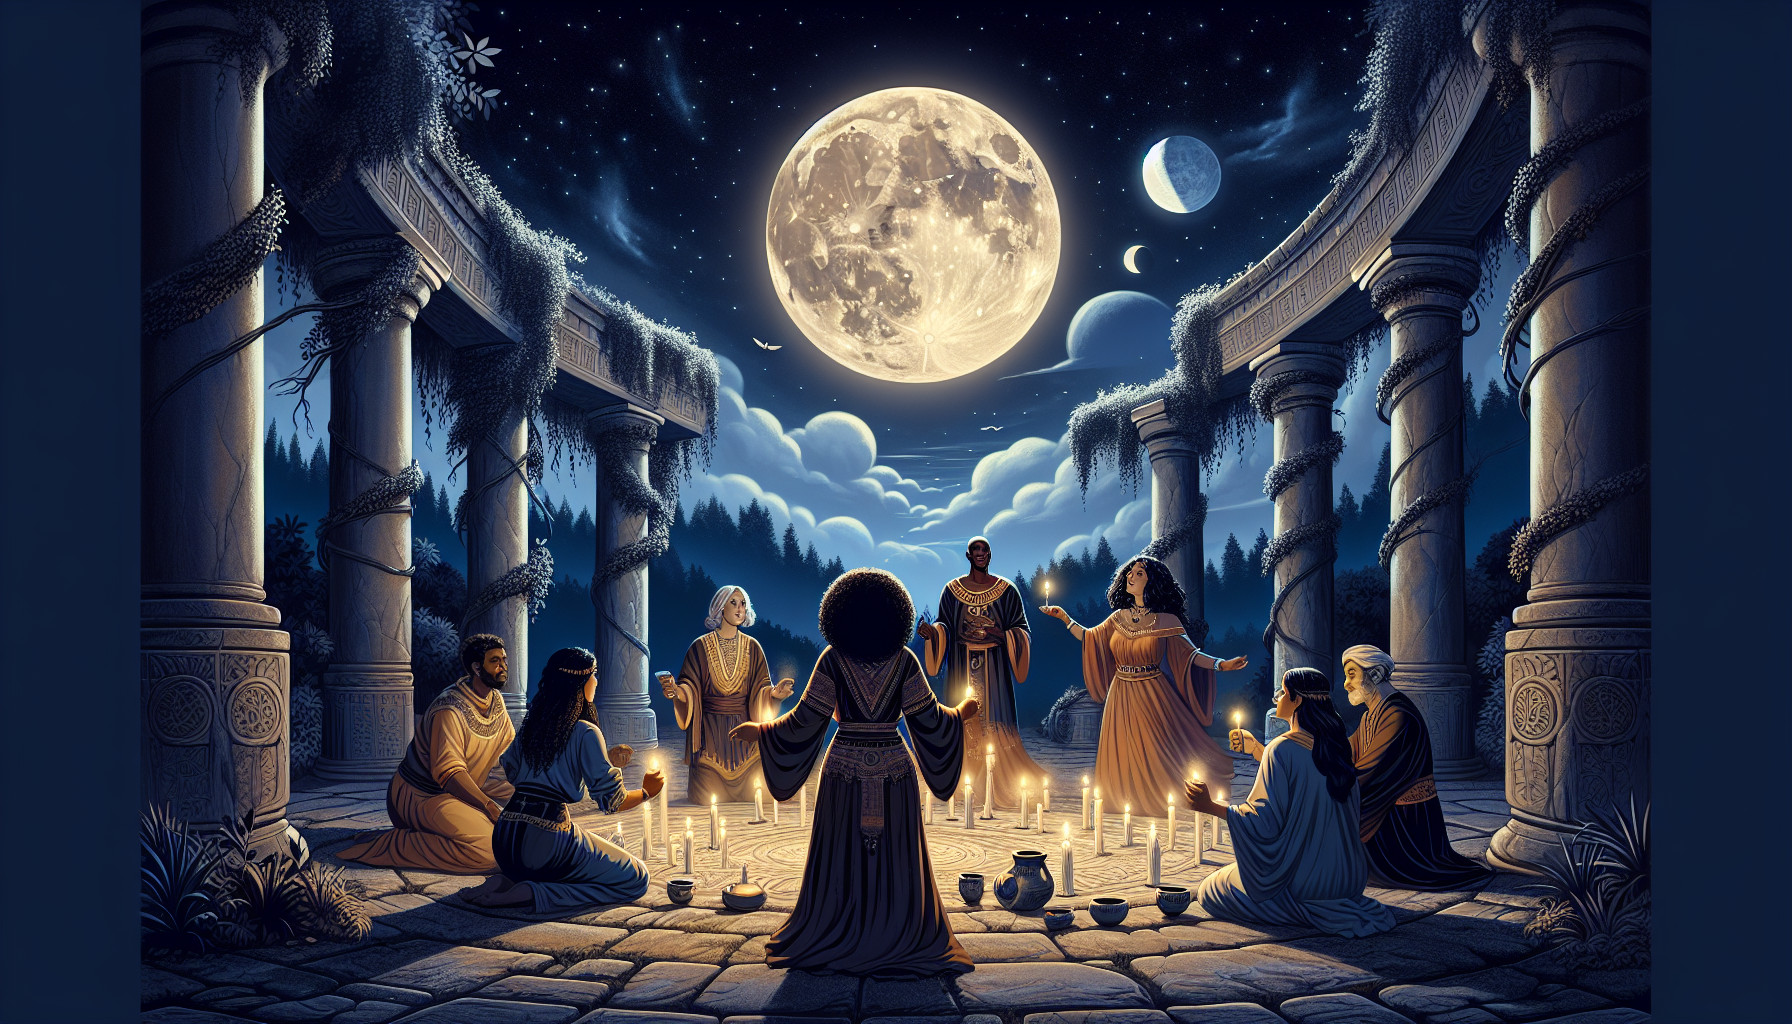 Celebrando El Esbat: Rituales De La Fase Lunar Mensual